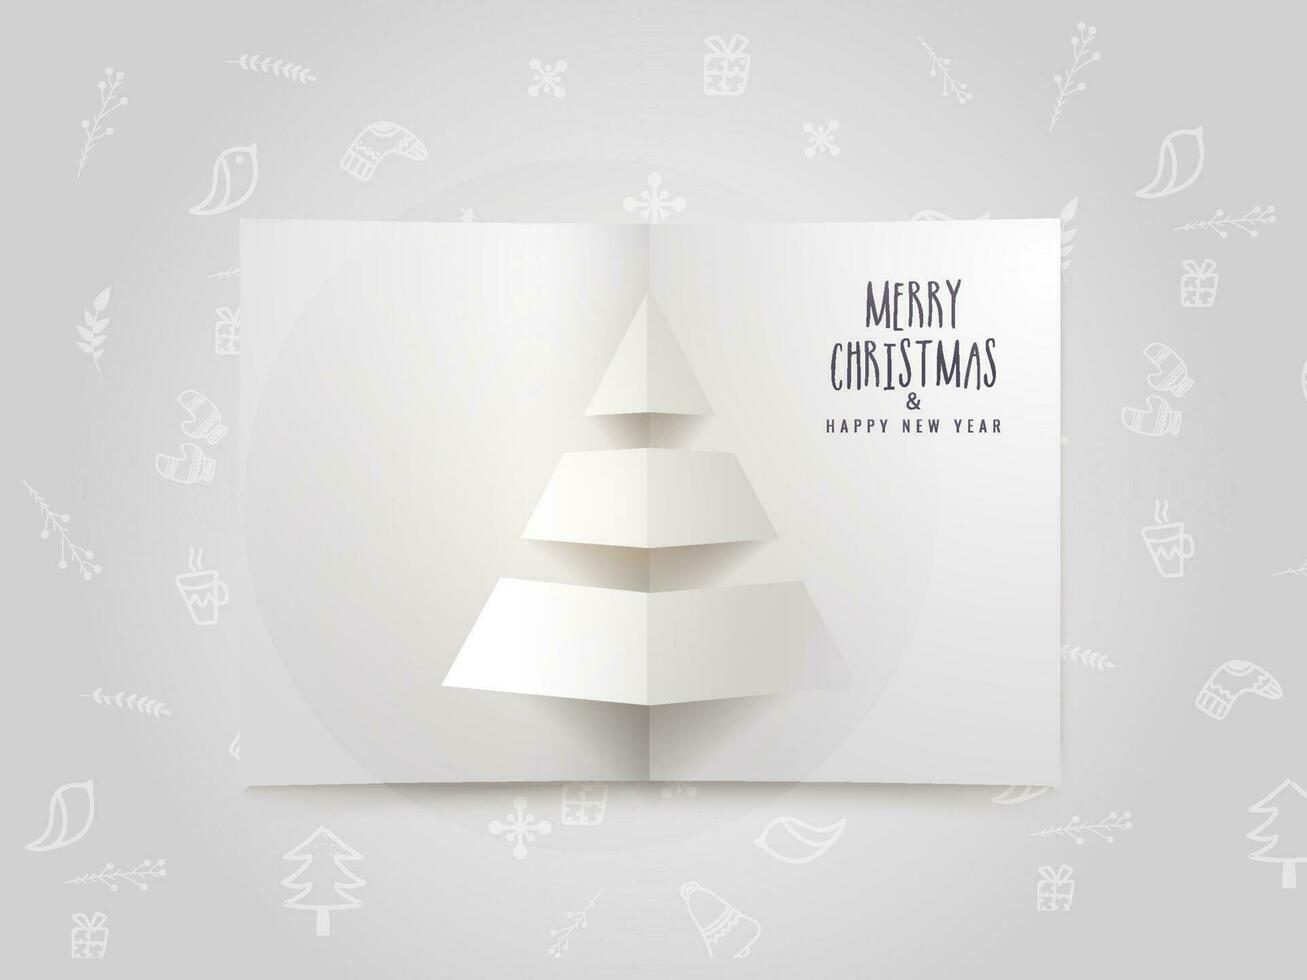 vrolijk Kerstmis en gelukkig nieuw jaar viering groet kaart ontwerp met papier besnoeiing Kerstmis boom Aan wit Kerstmis festival elementen patroon achtergrond. vector